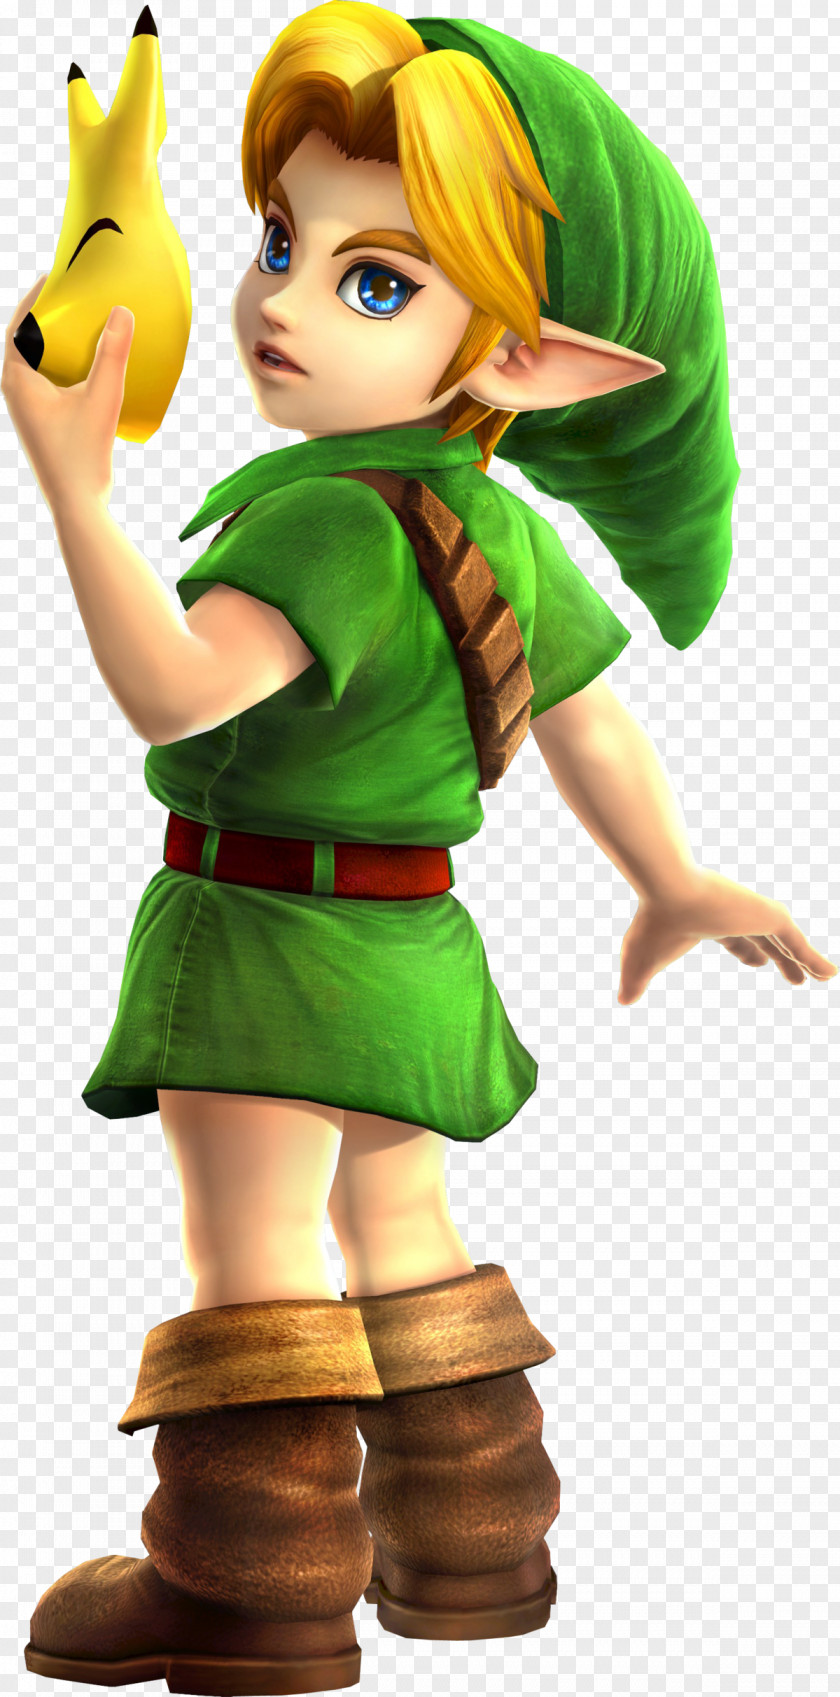 Zelda Link Hyrule Warriors The Legend Of Zelda: Majora's Mask Ocarina Time Wii PNG